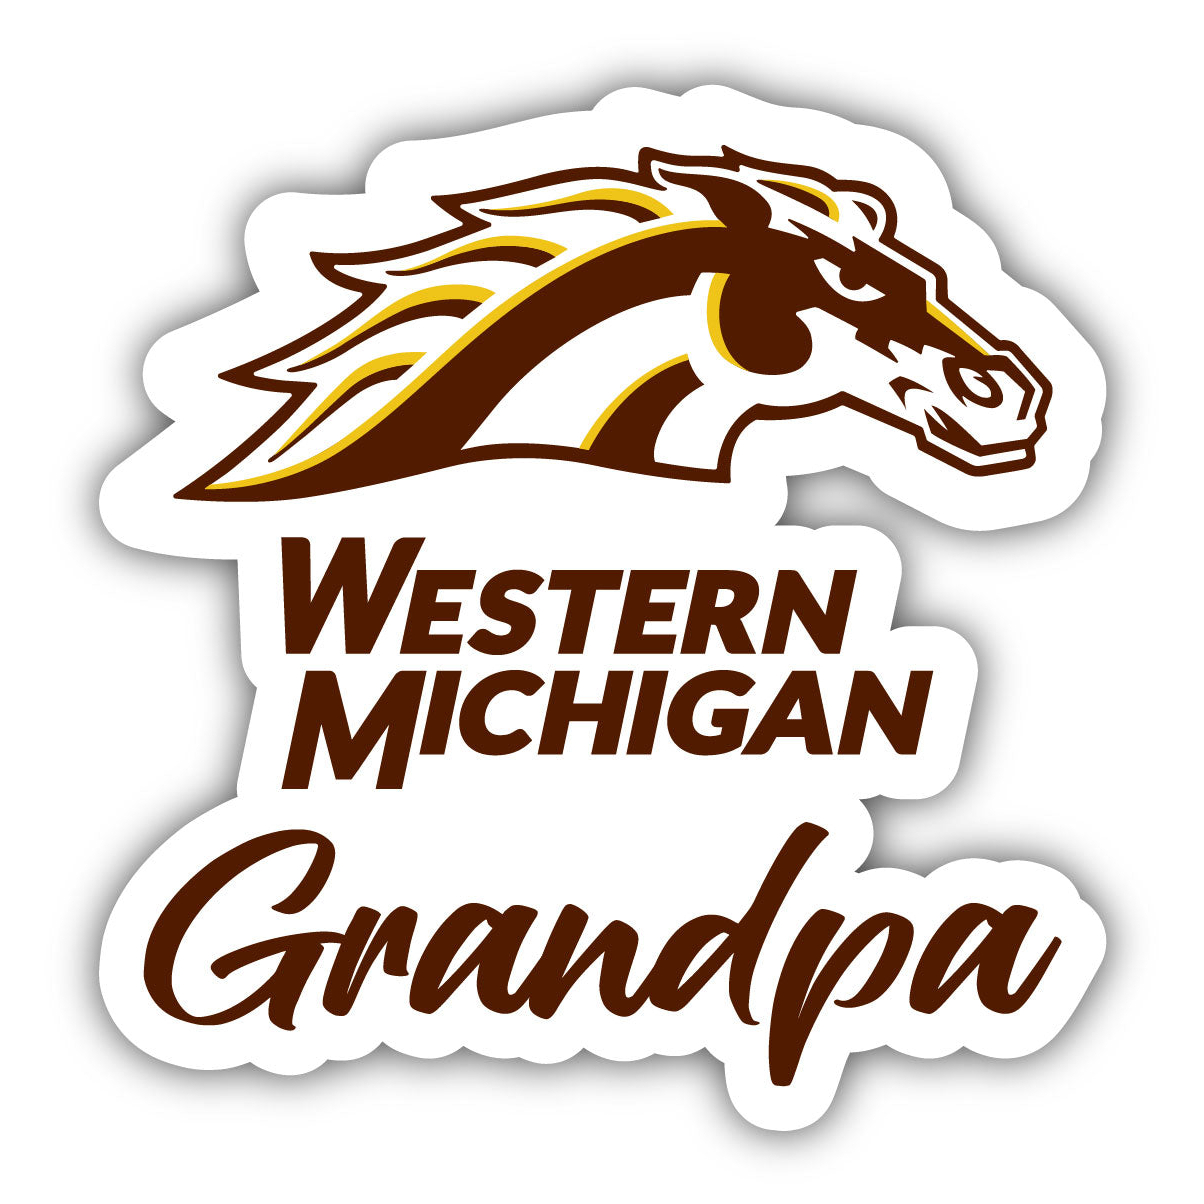 Western Michigan University 4 Inch Proud Grandpa Die Cut Decal - Grandpa